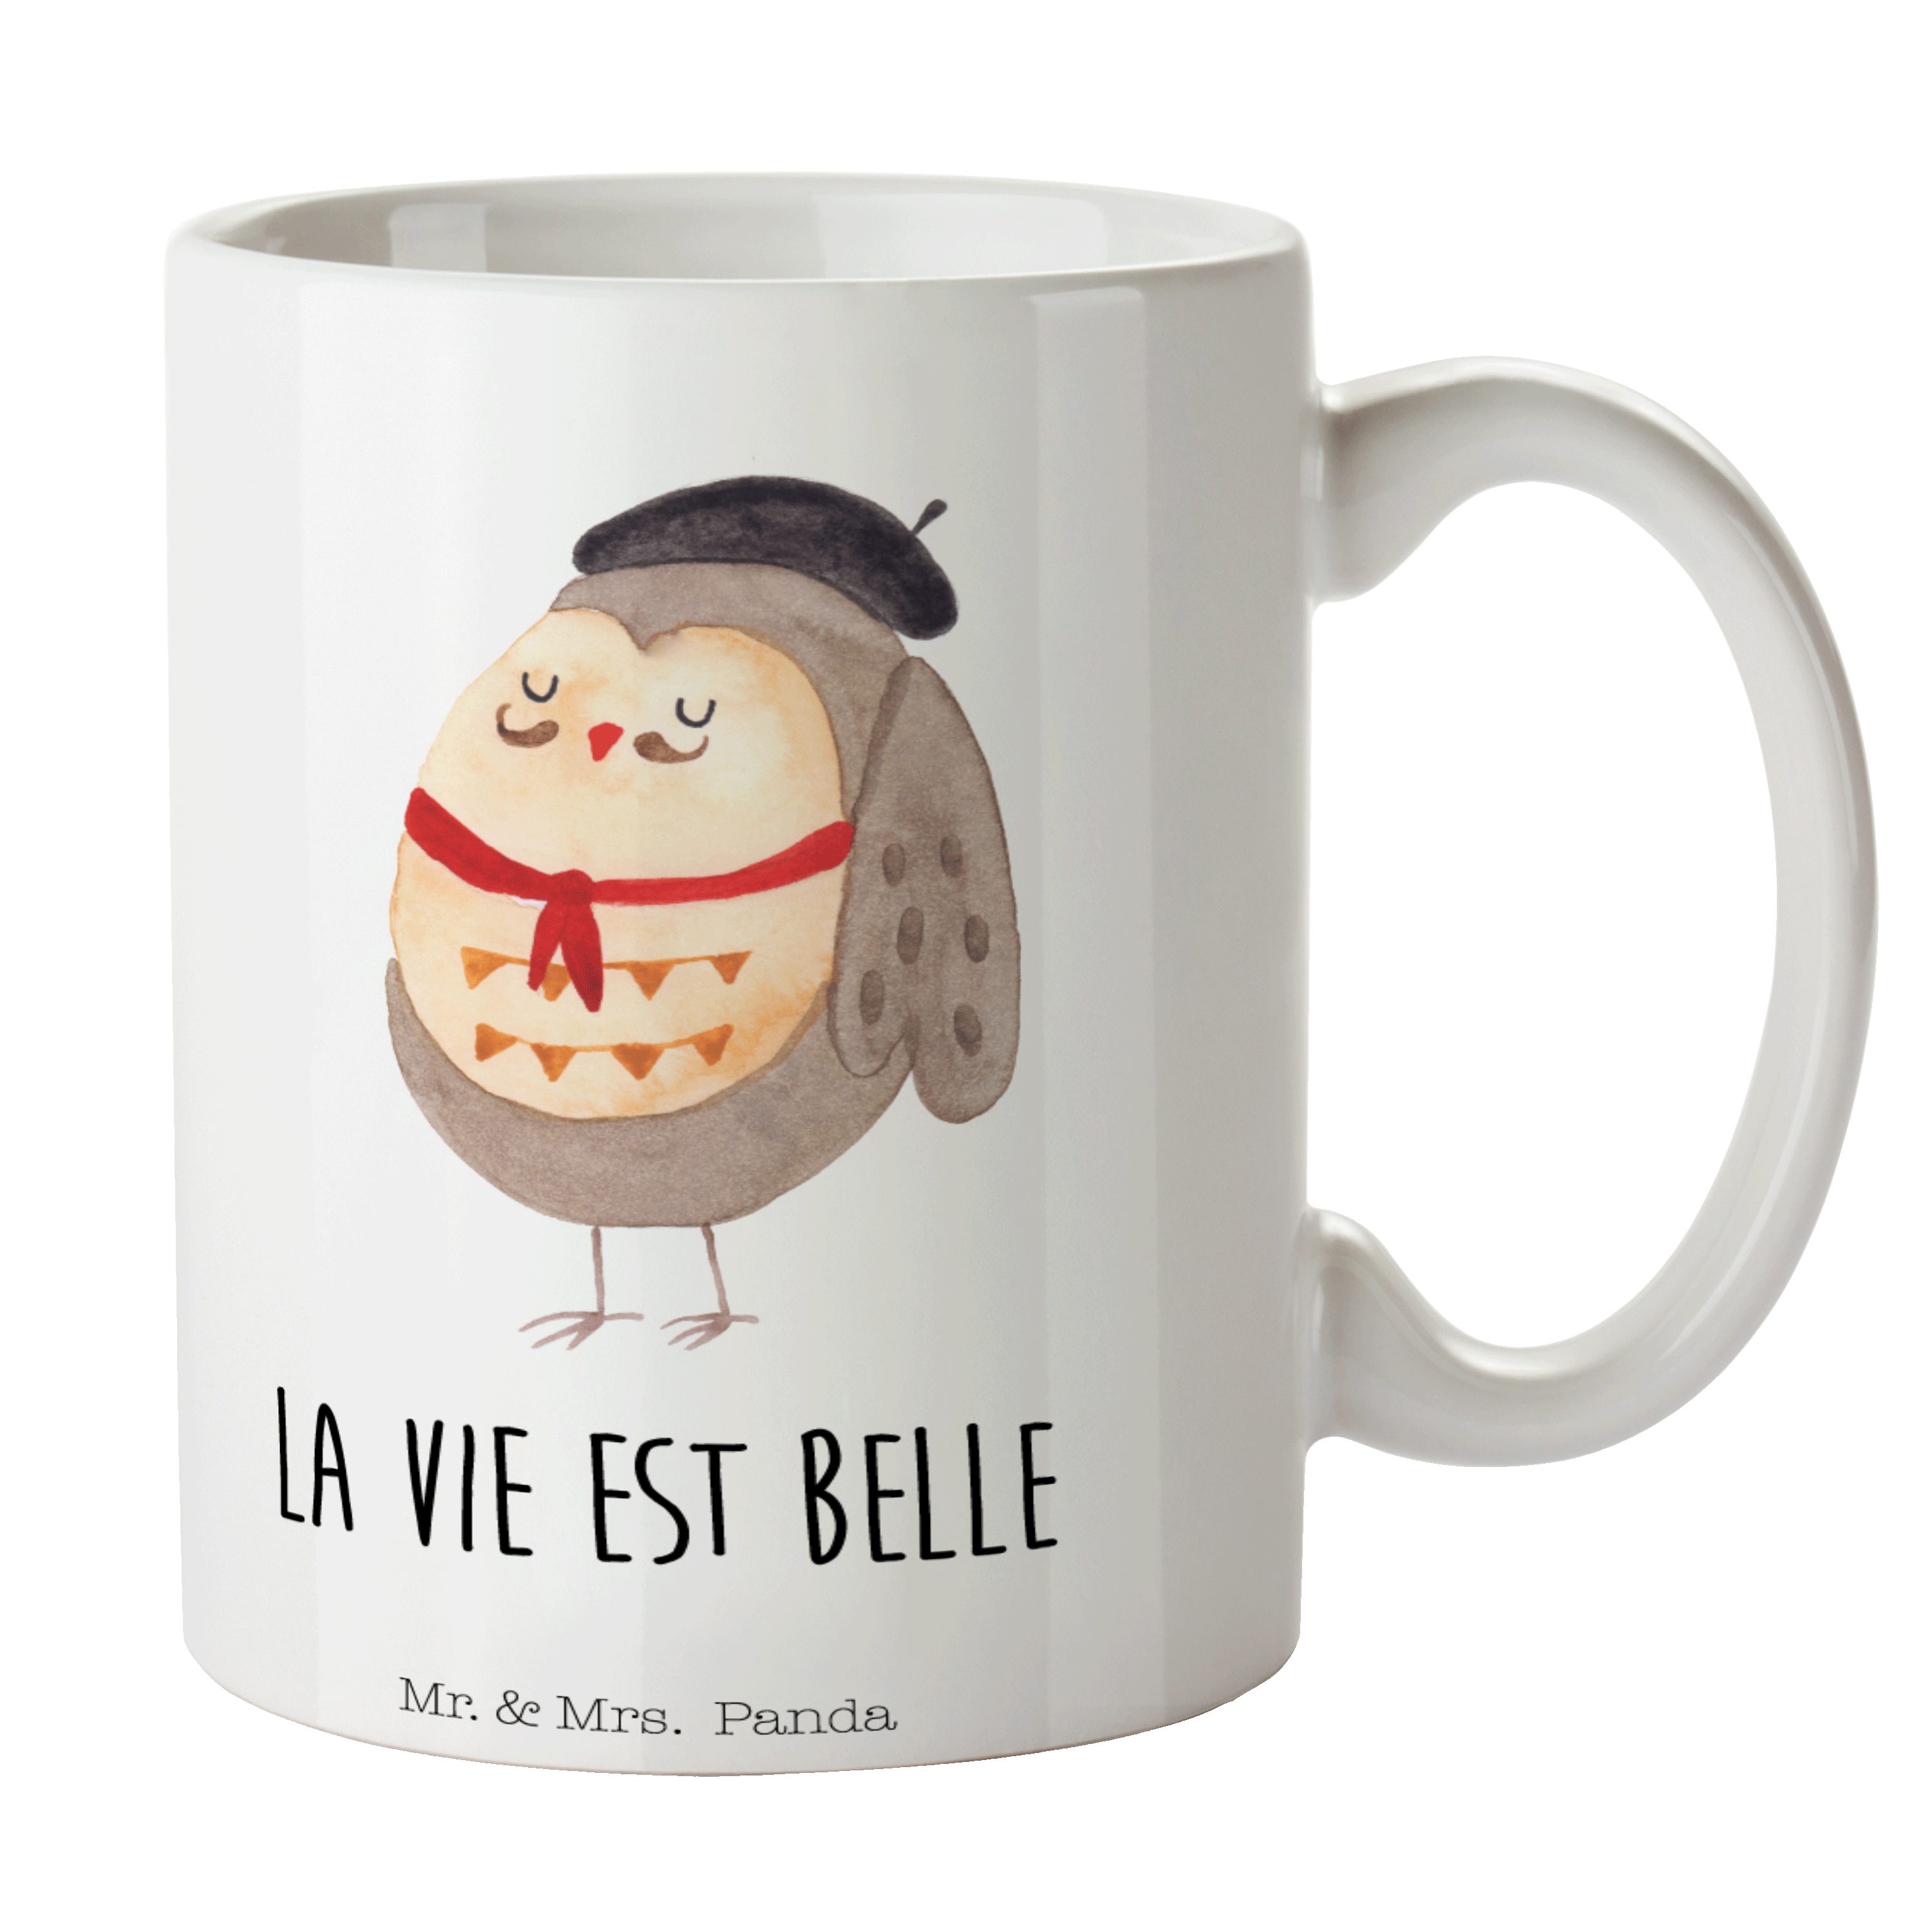 Mr. & Mrs. Panda Tasse Eule Französisch - Weiß - Geschenk, La vie est belle, Spruch Französi, Keramik